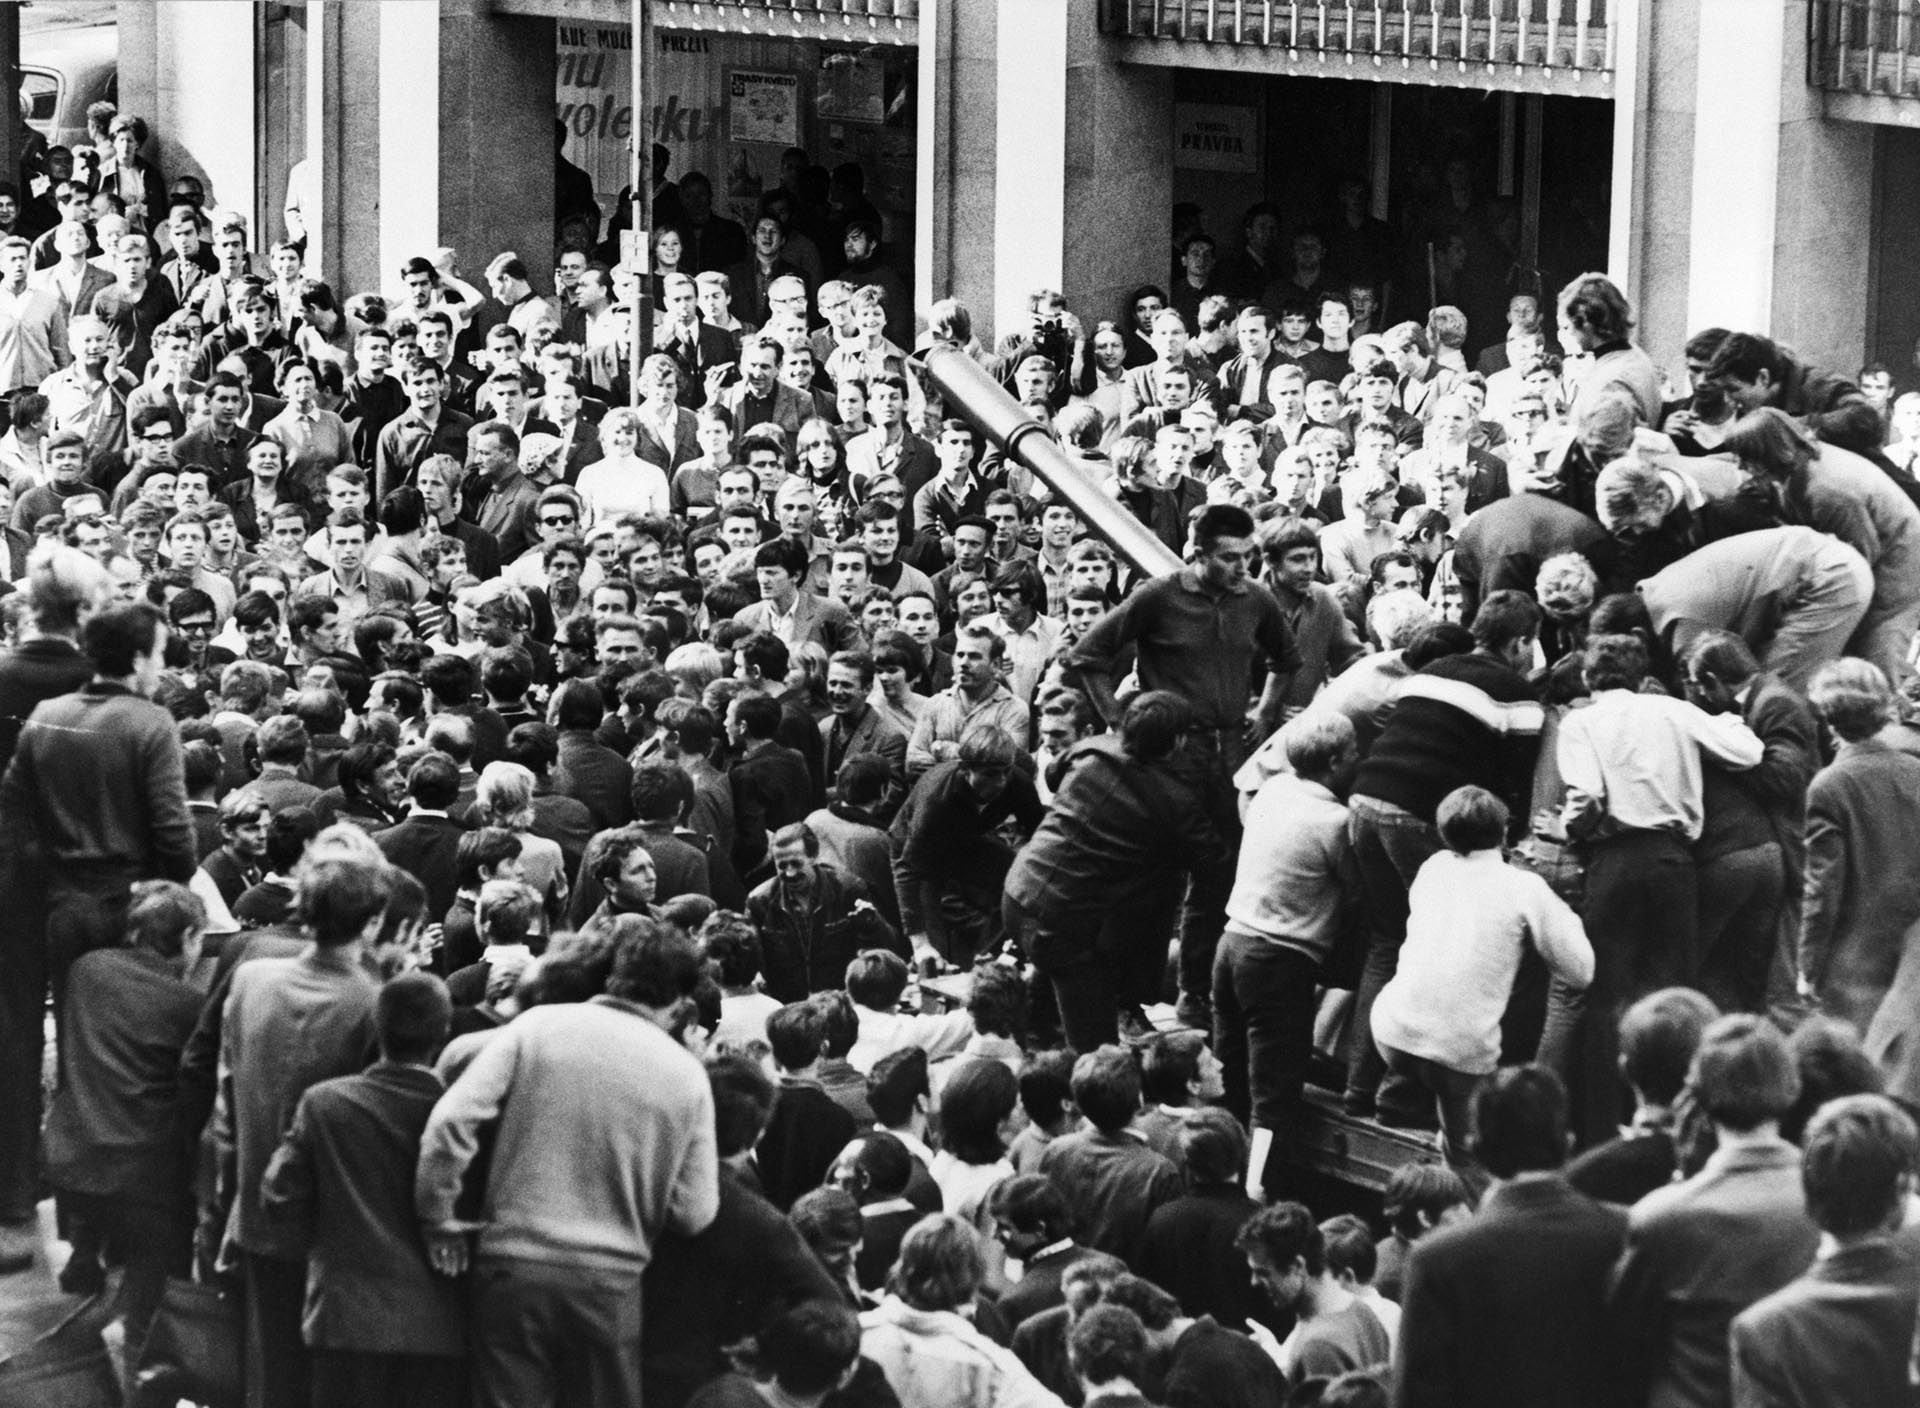 La manifestación en Bratislava, Checoslovaquia, donde los ciudadanos se treparon a los tanques luego de la invasión de la Unión Soviética y sus satélites del Pacto de Varsovia 